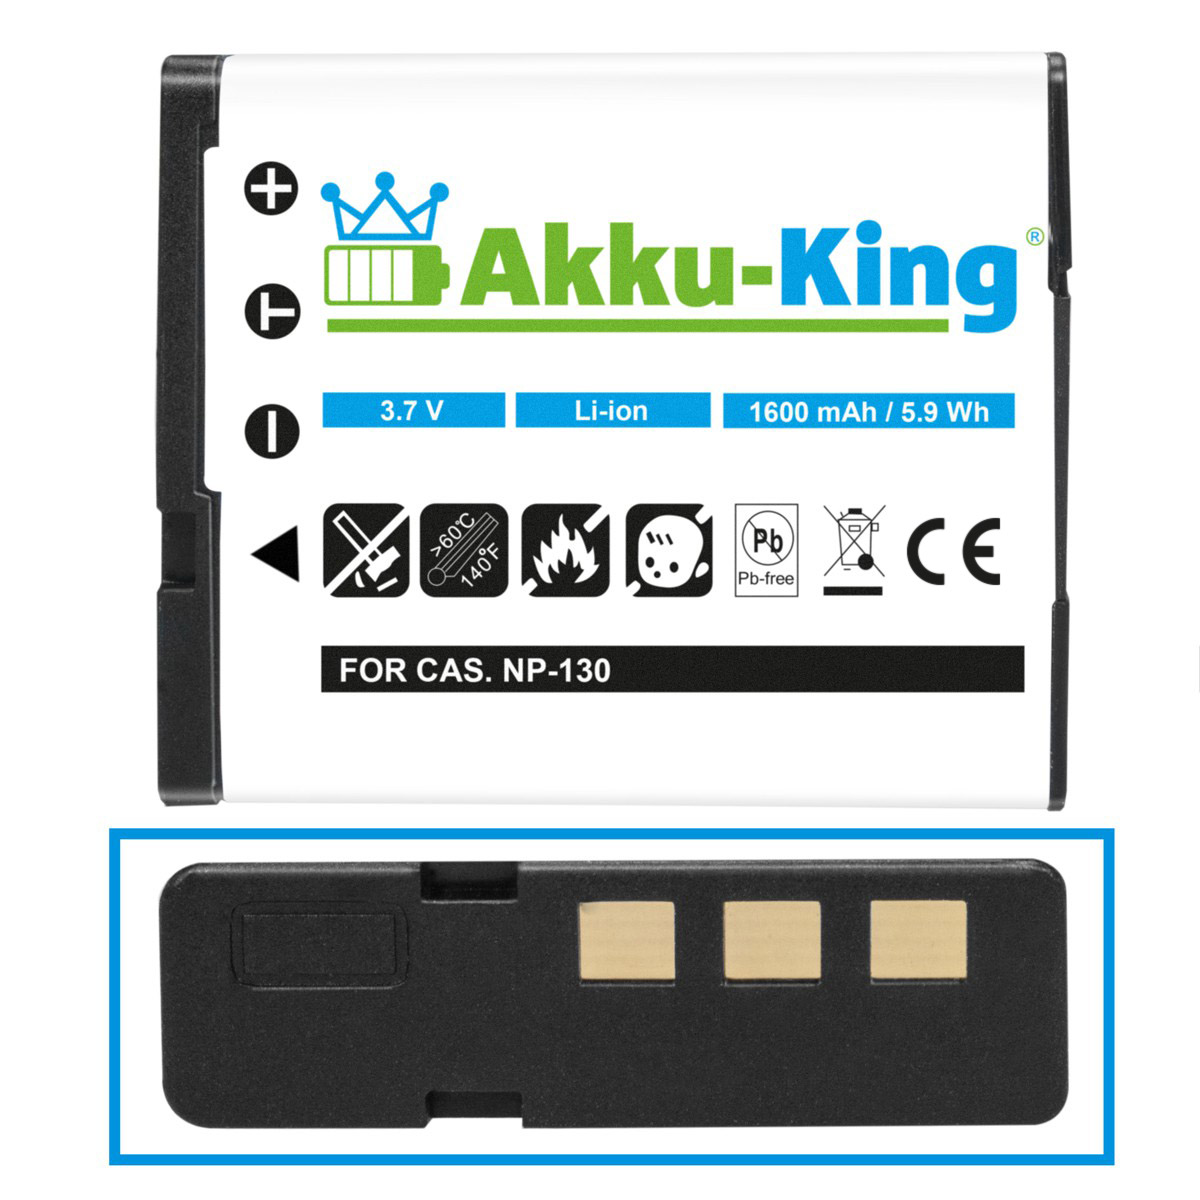 AKKU-KING Volt, 1600mAh NP-130 Kamera-Akku, Akku Casio Li-Ion mit kompatibel 3.7